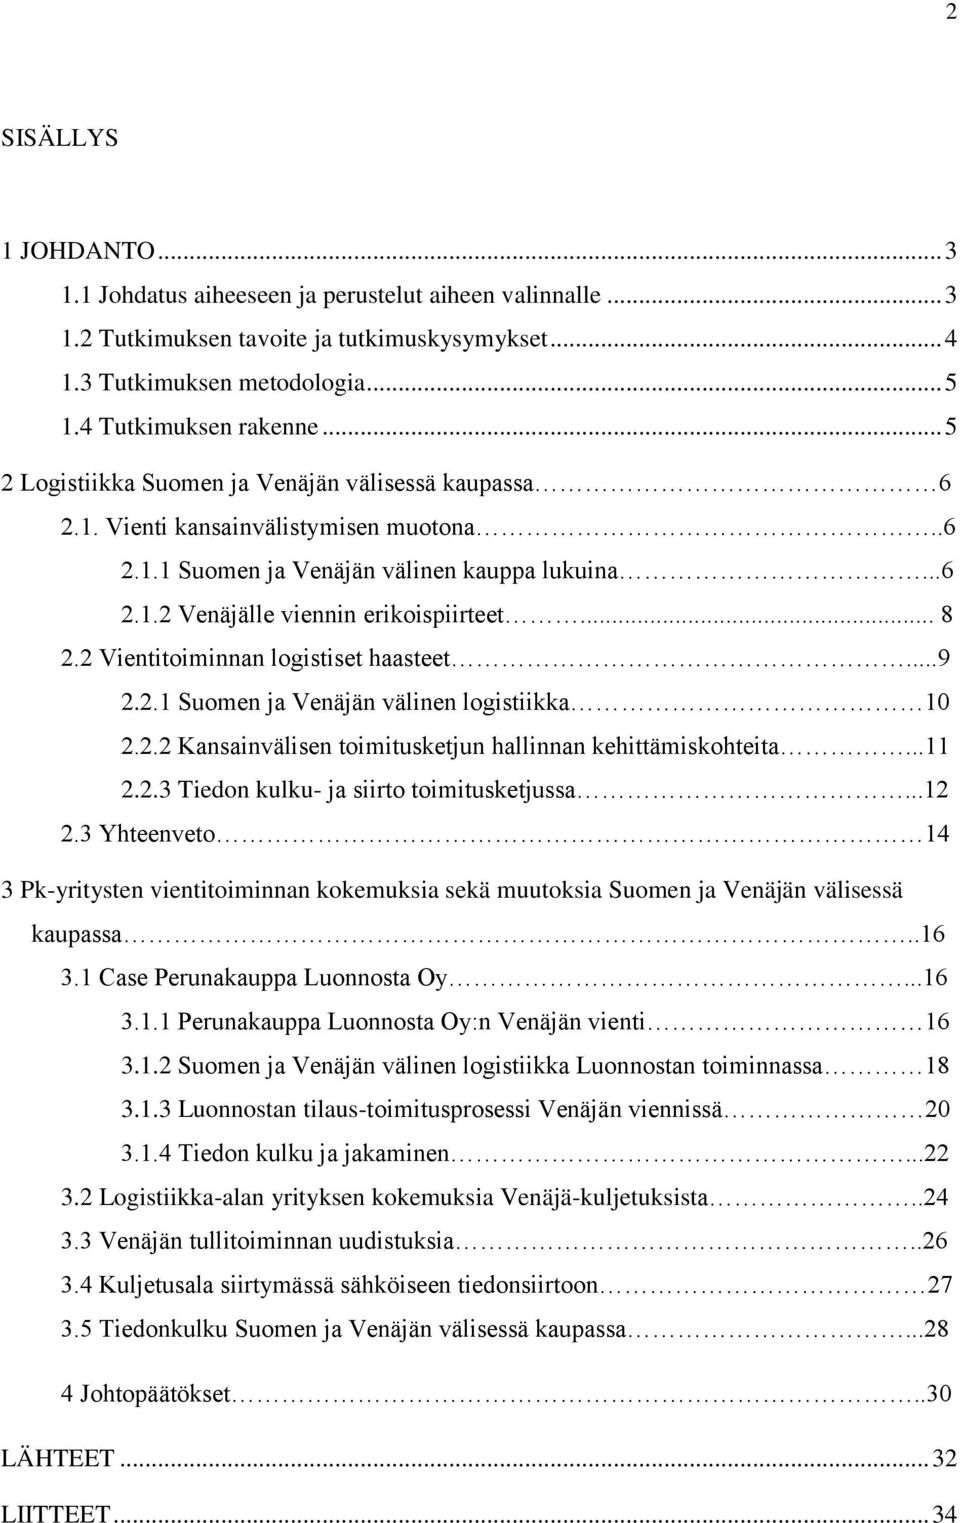 2 Vientitoiminnan logistiset haasteet...9 2.2.1 Suomen ja Venäjän välinen logistiikka 10 2.2.2 Kansainvälisen toimitusketjun hallinnan kehittämiskohteita...11 2.2.3 Tiedon kulku- ja siirto toimitusketjussa.